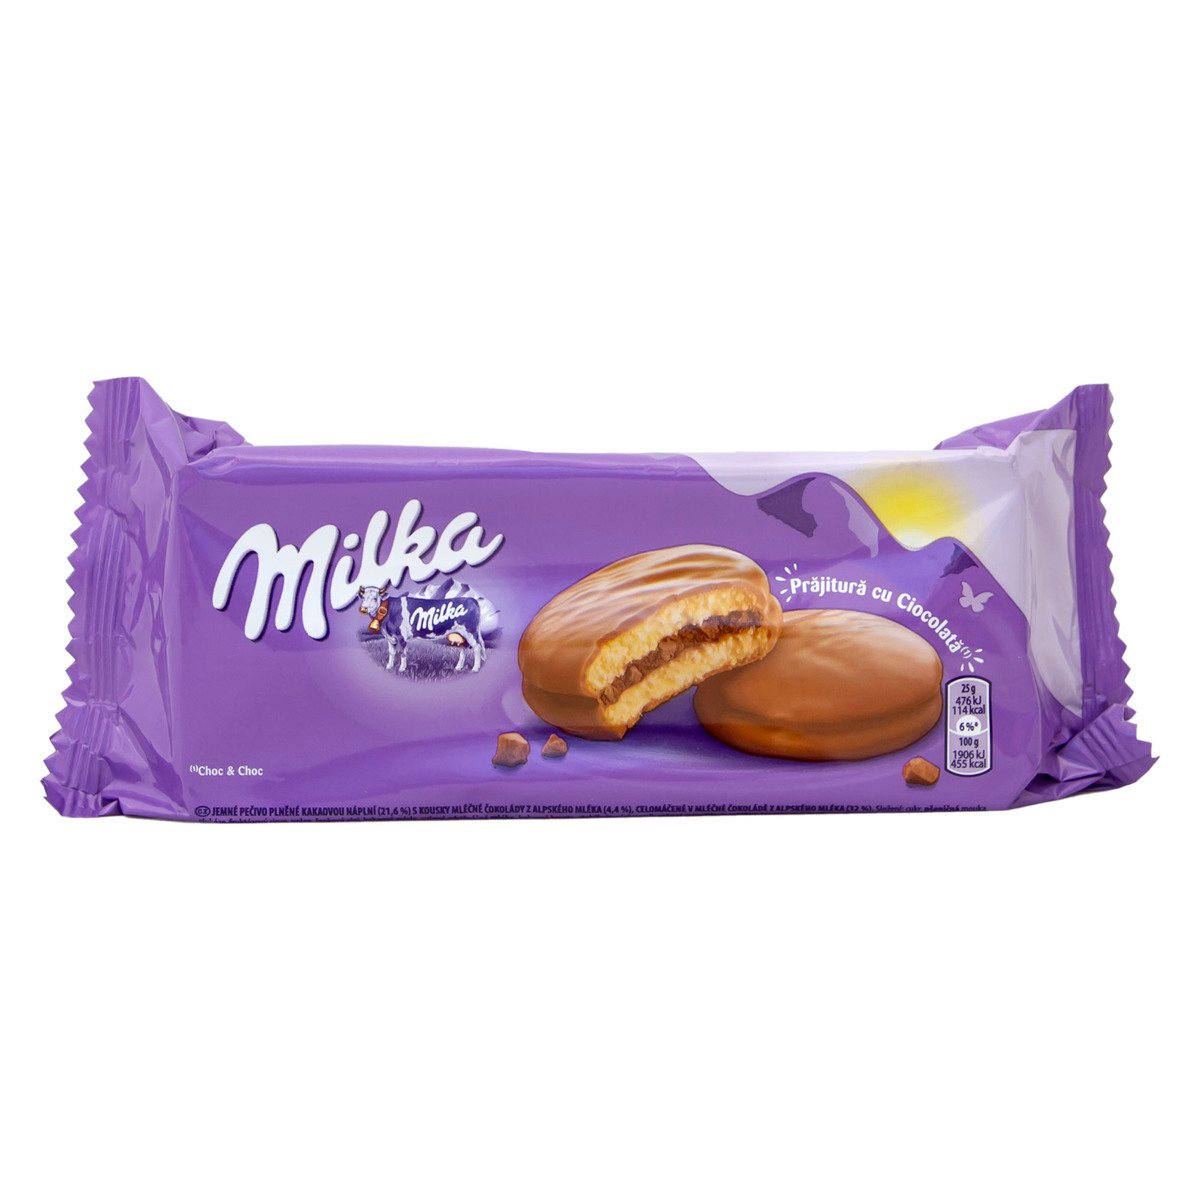 ميلكا كوكيز بالشوكولاتة 150 جم